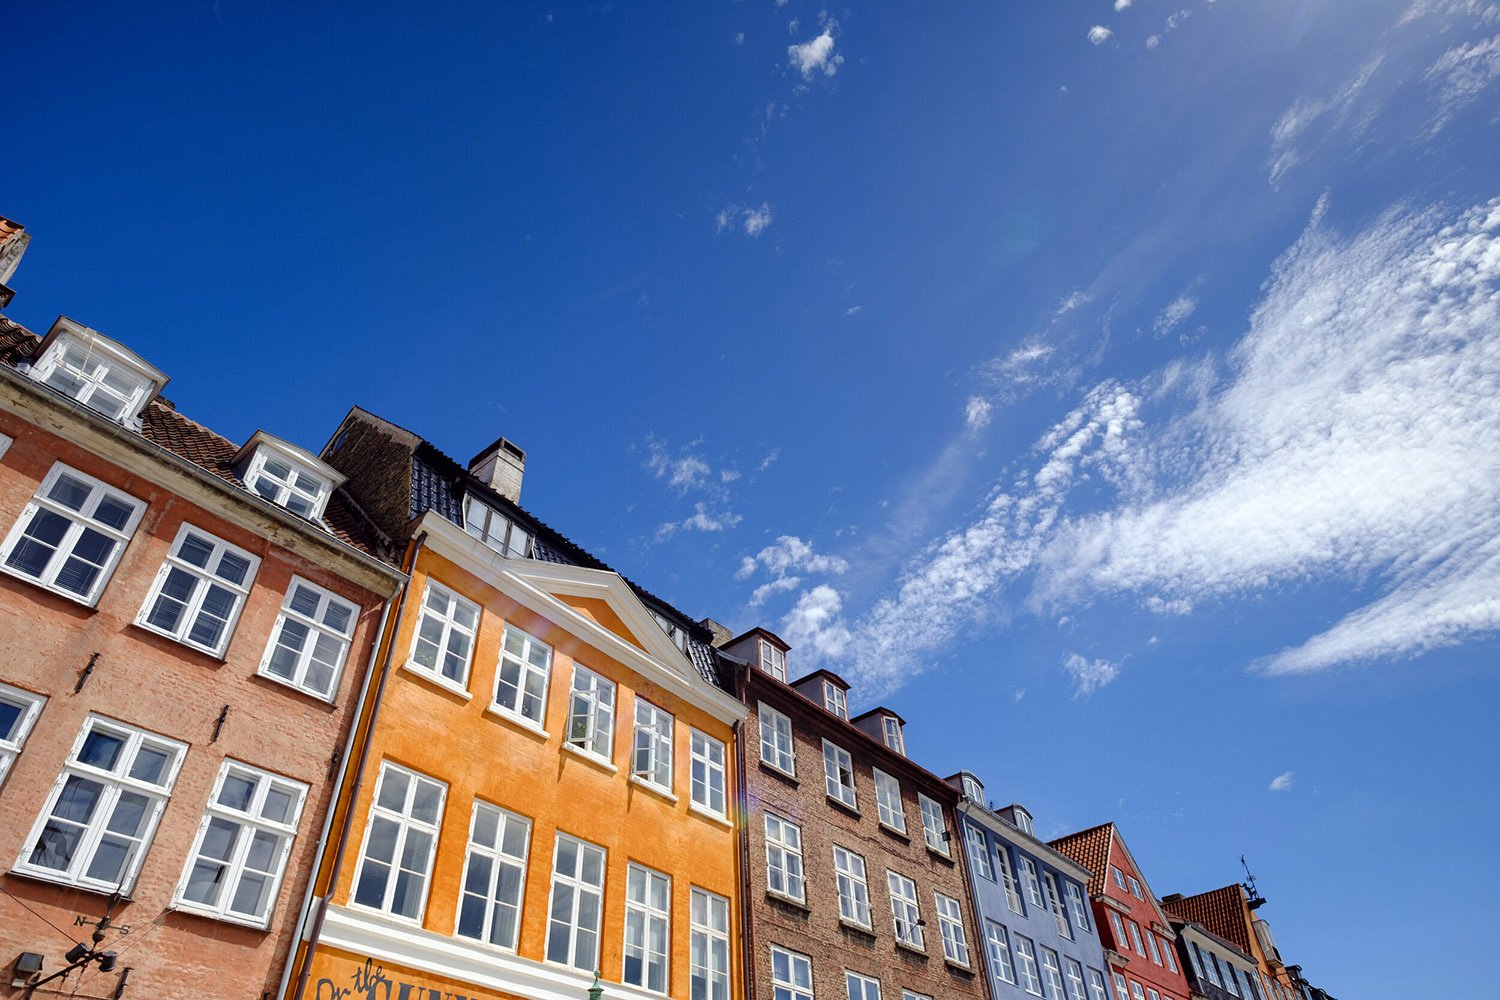 Classic Copenhagen apartment buildings